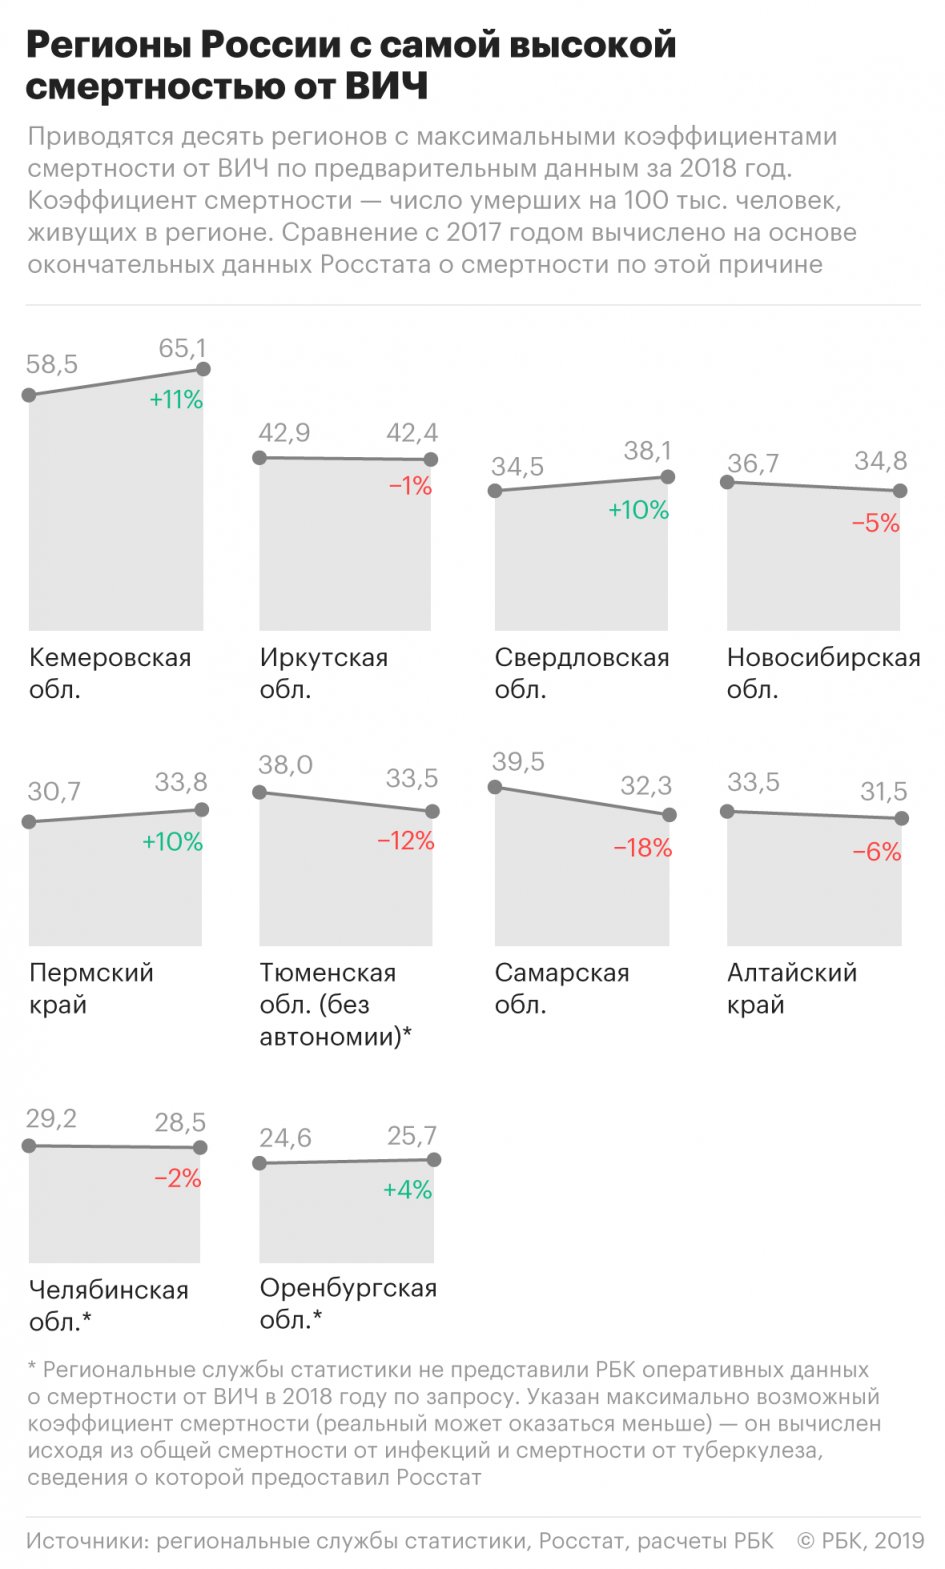 Где в России чаще всего умирают от ВИЧ 